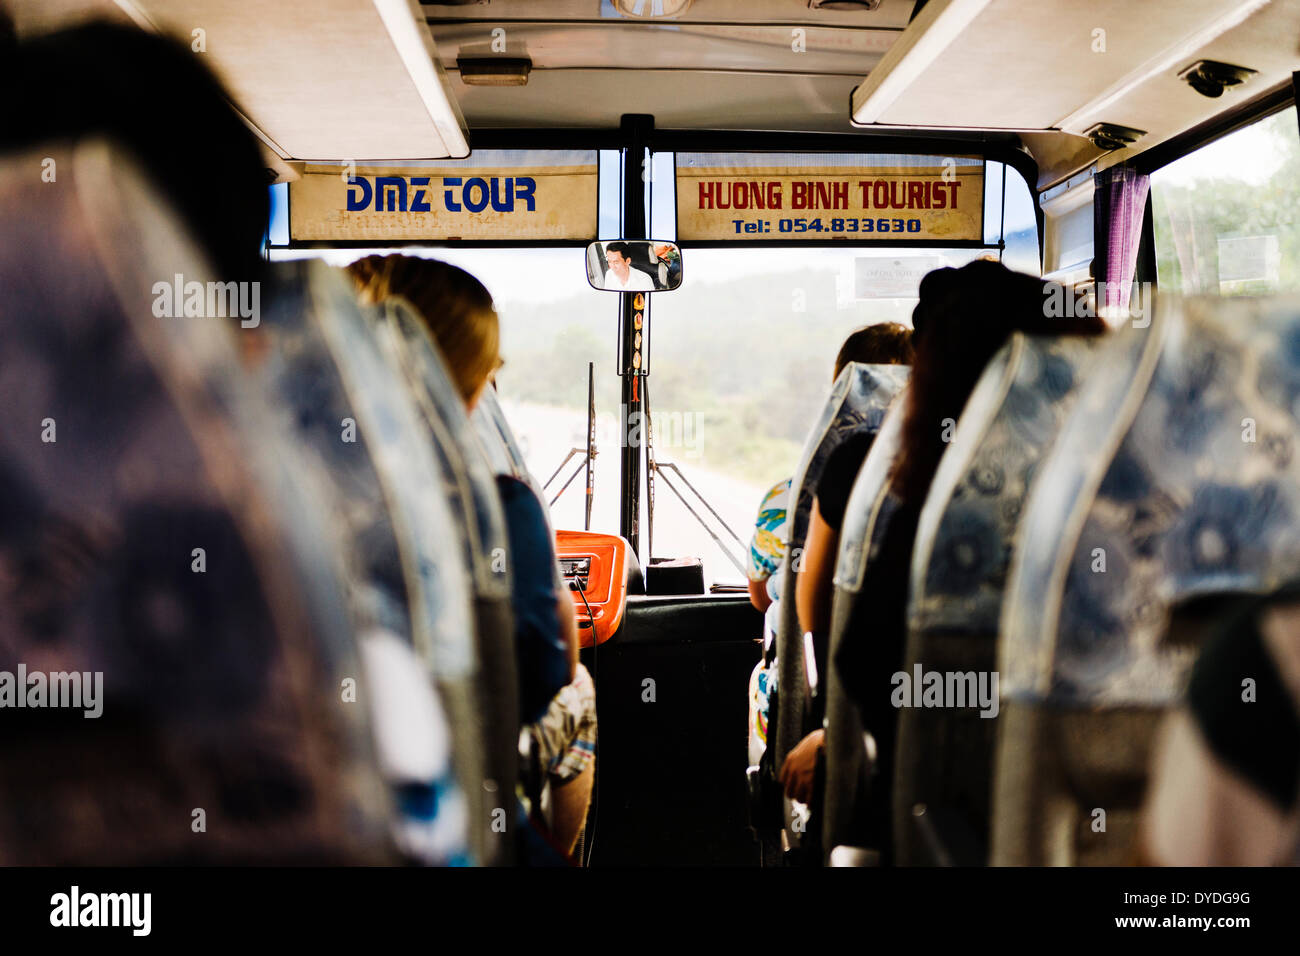 DMZ Tour around Hue. Stock Photo